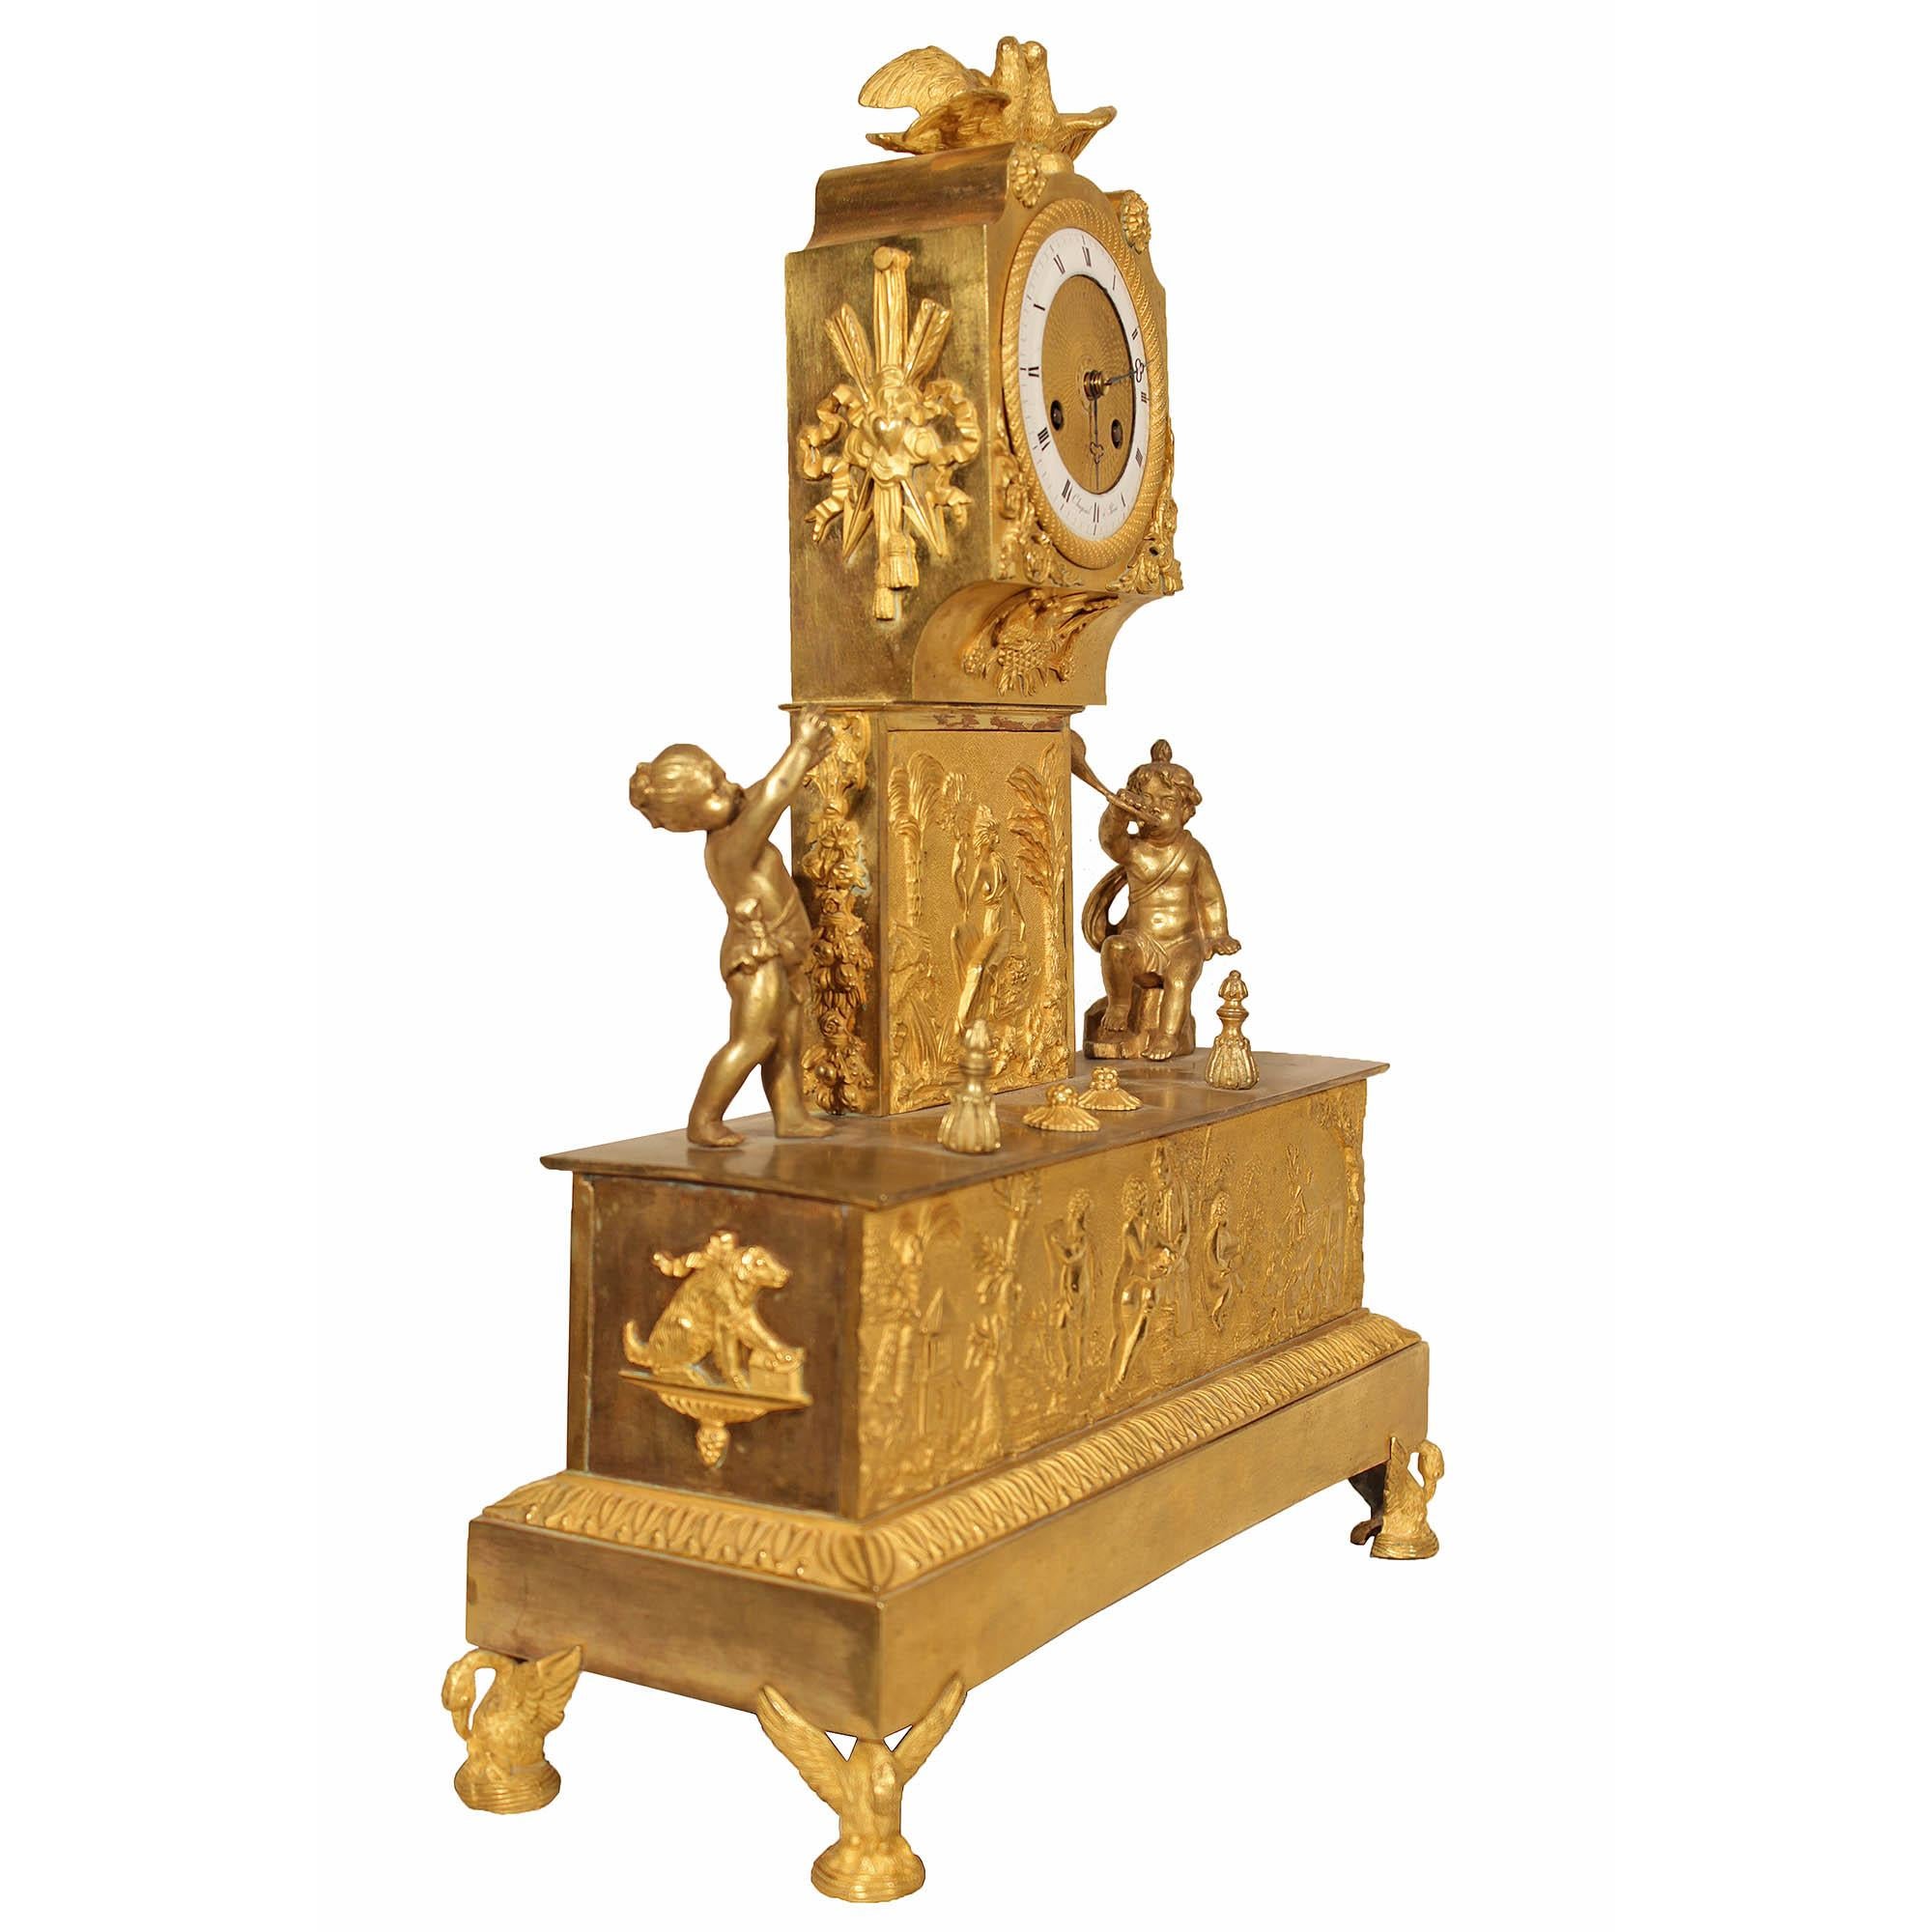 Une spectaculaire et unique pendule de cheminée en bronze doré de style Louis XVI du début du XIXe siècle, signée par Chapsal à Paris. L'horloge repose sur des supports en forme de cygne finement ciselés, sous une base rectangulaire. La façade